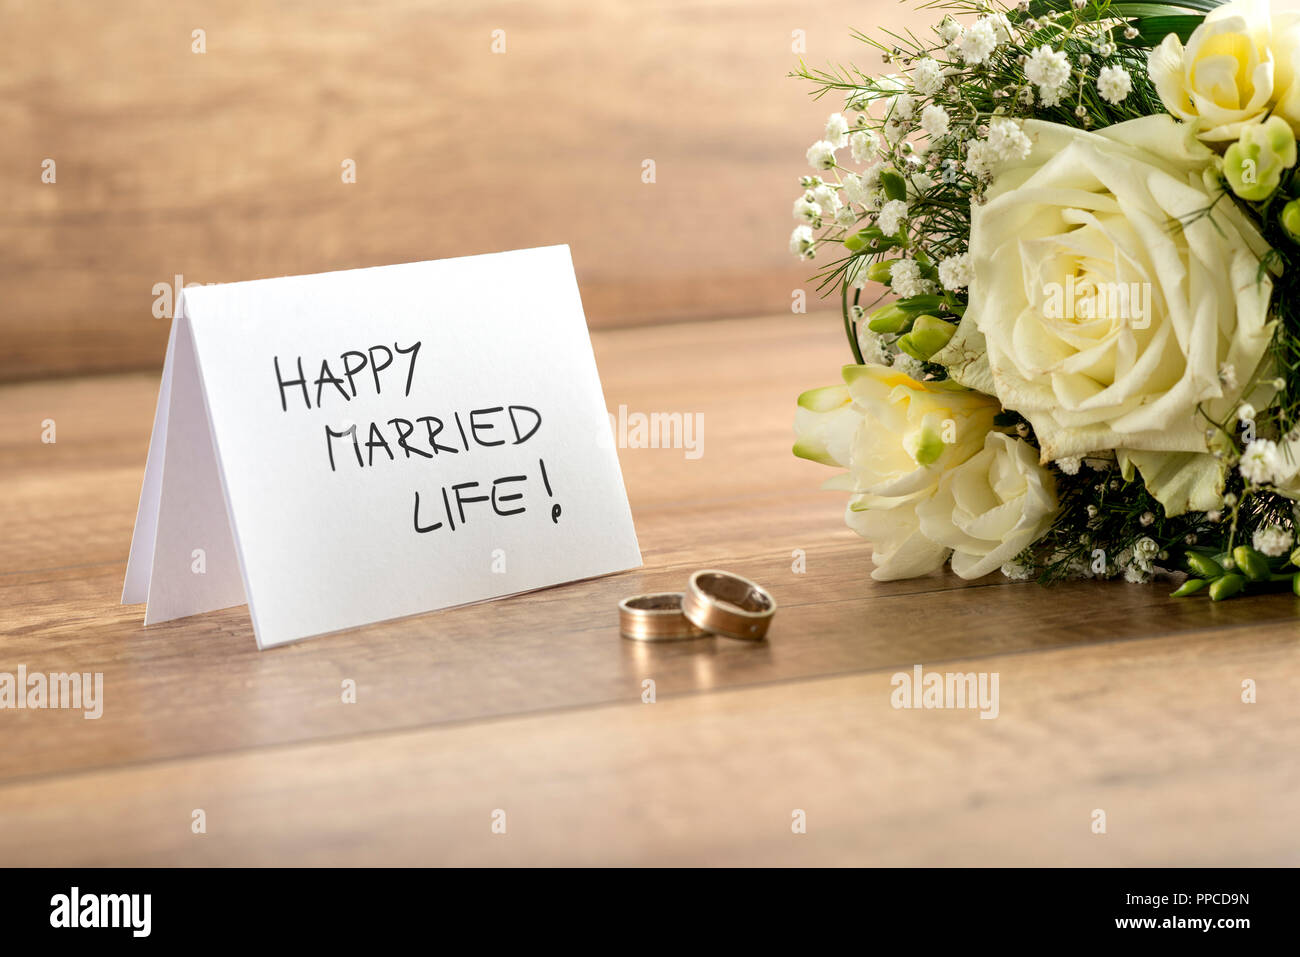 In der Nähe von wunderschönen Braut Strauß mit frischen Blumen, ein Paar Ringe und glückliches Eheleben Karte für Brautpaare auf Holztisch. Stockfoto